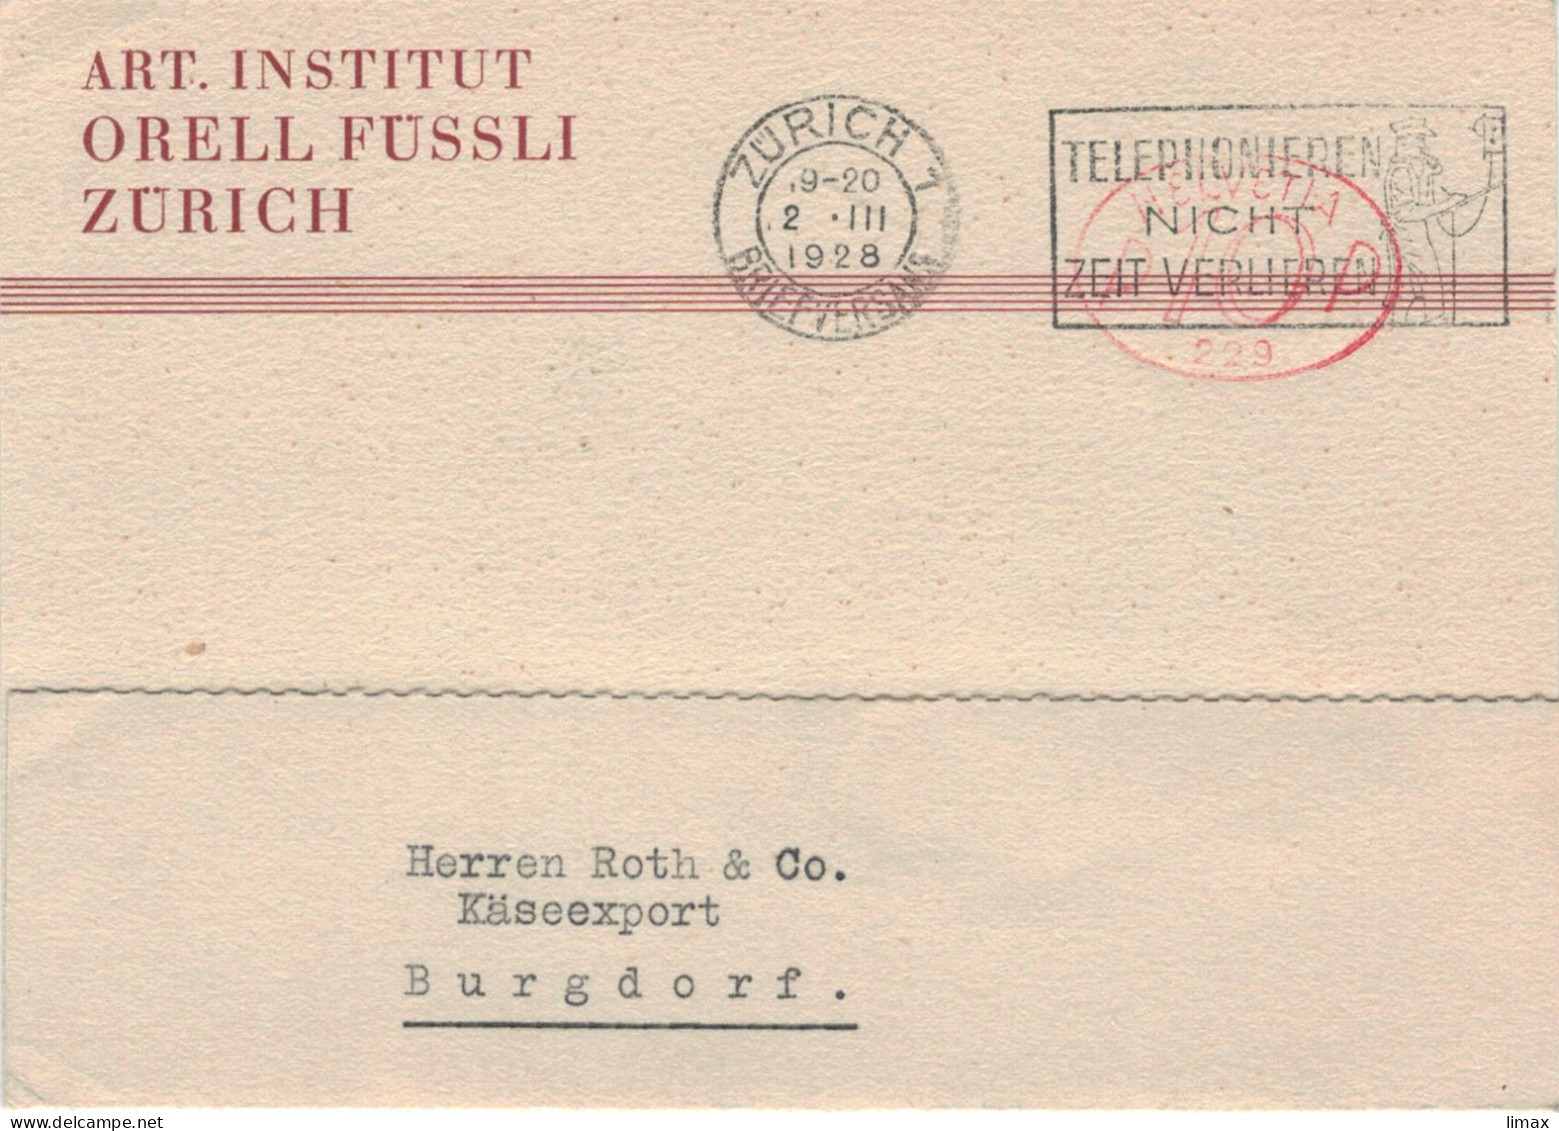 Art. Institut Orell Füssli Zürich Briefversand 1928 Hasler-Stempel No 229 - Telefonieren Nicht Zeit Verlieren > Burgdorf - Affranchissements Mécaniques